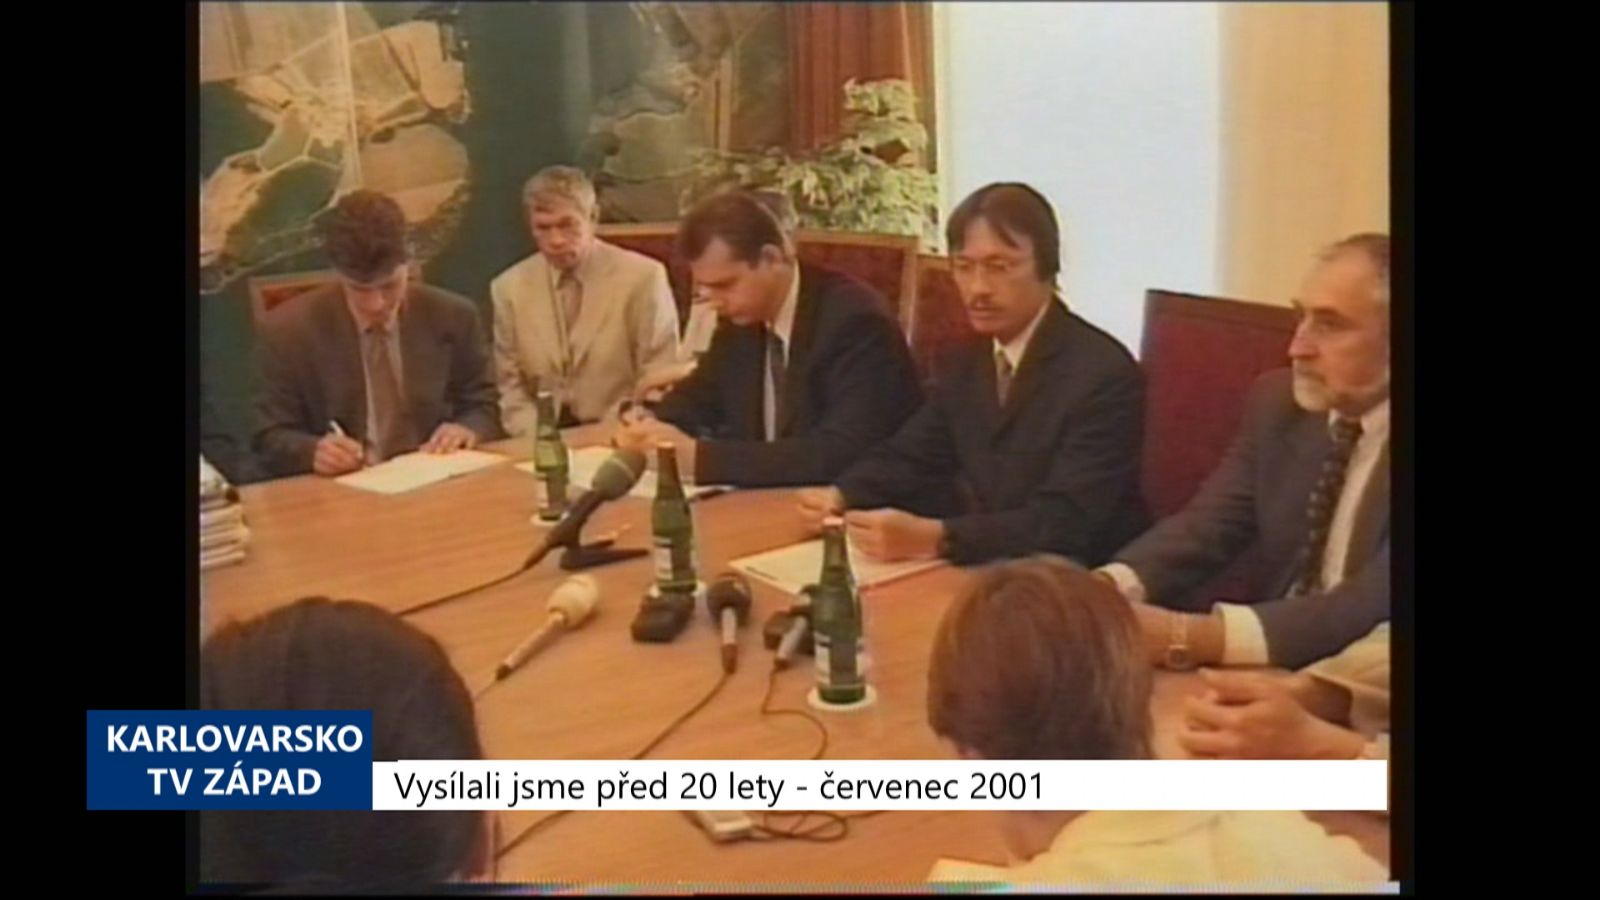 2001 – Cheb: Město bezplatně získalo areál bývalých kasáren (TV Západ)